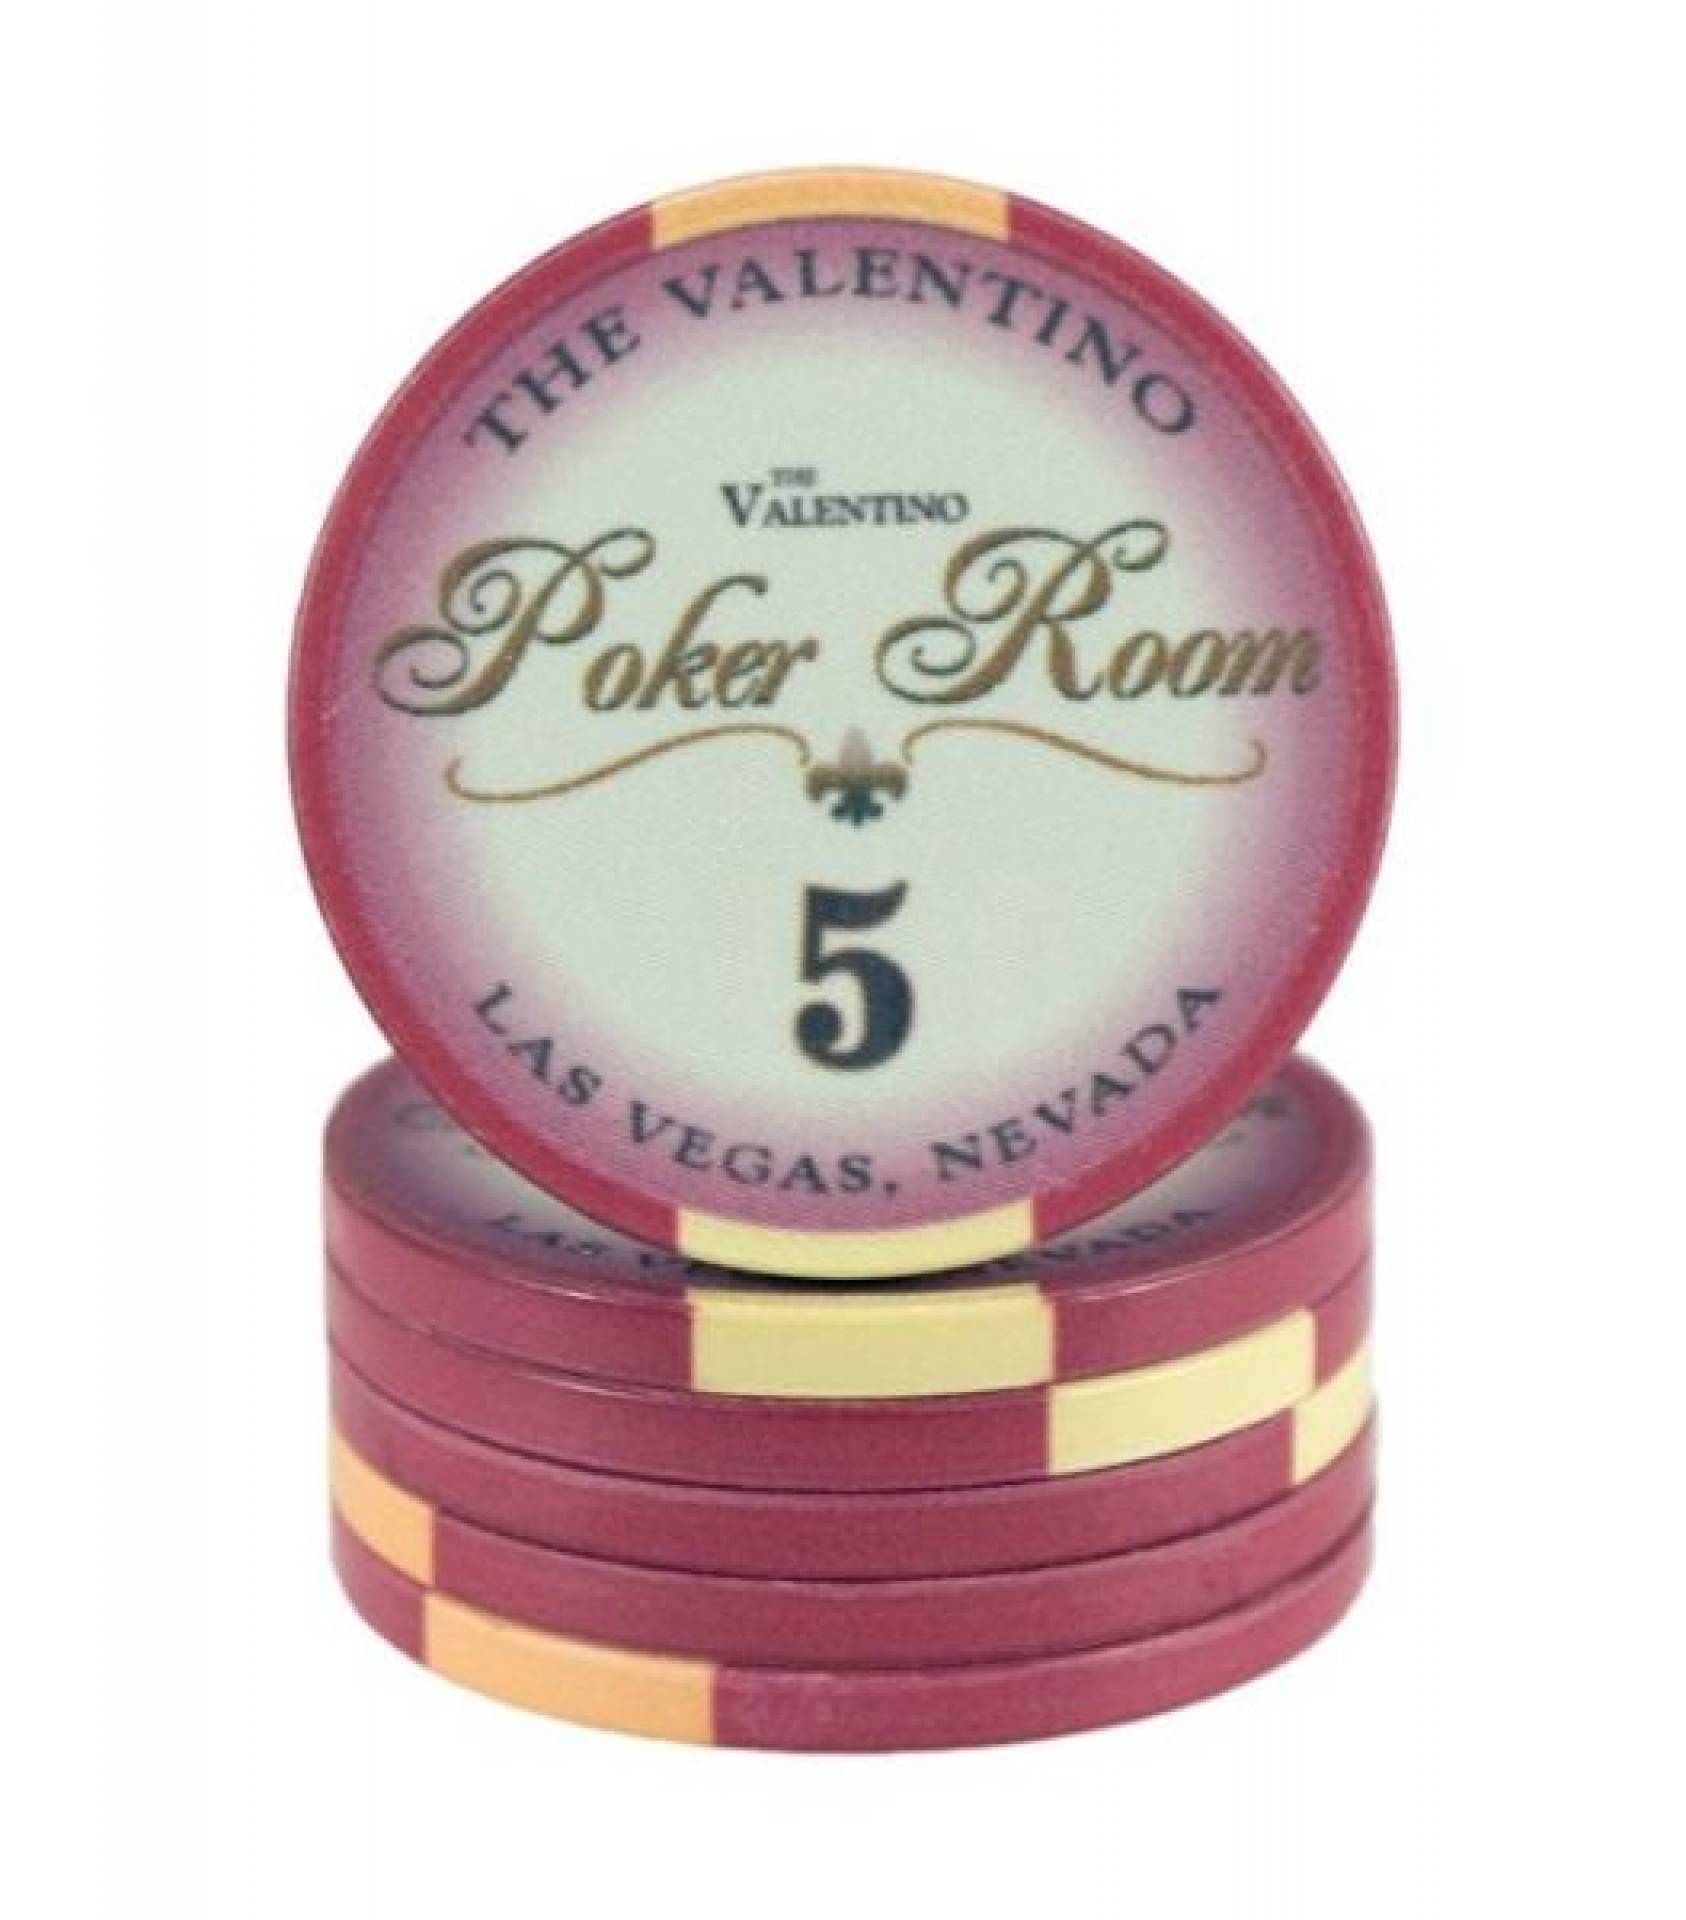 Poker chip Valentino - hodnota 5